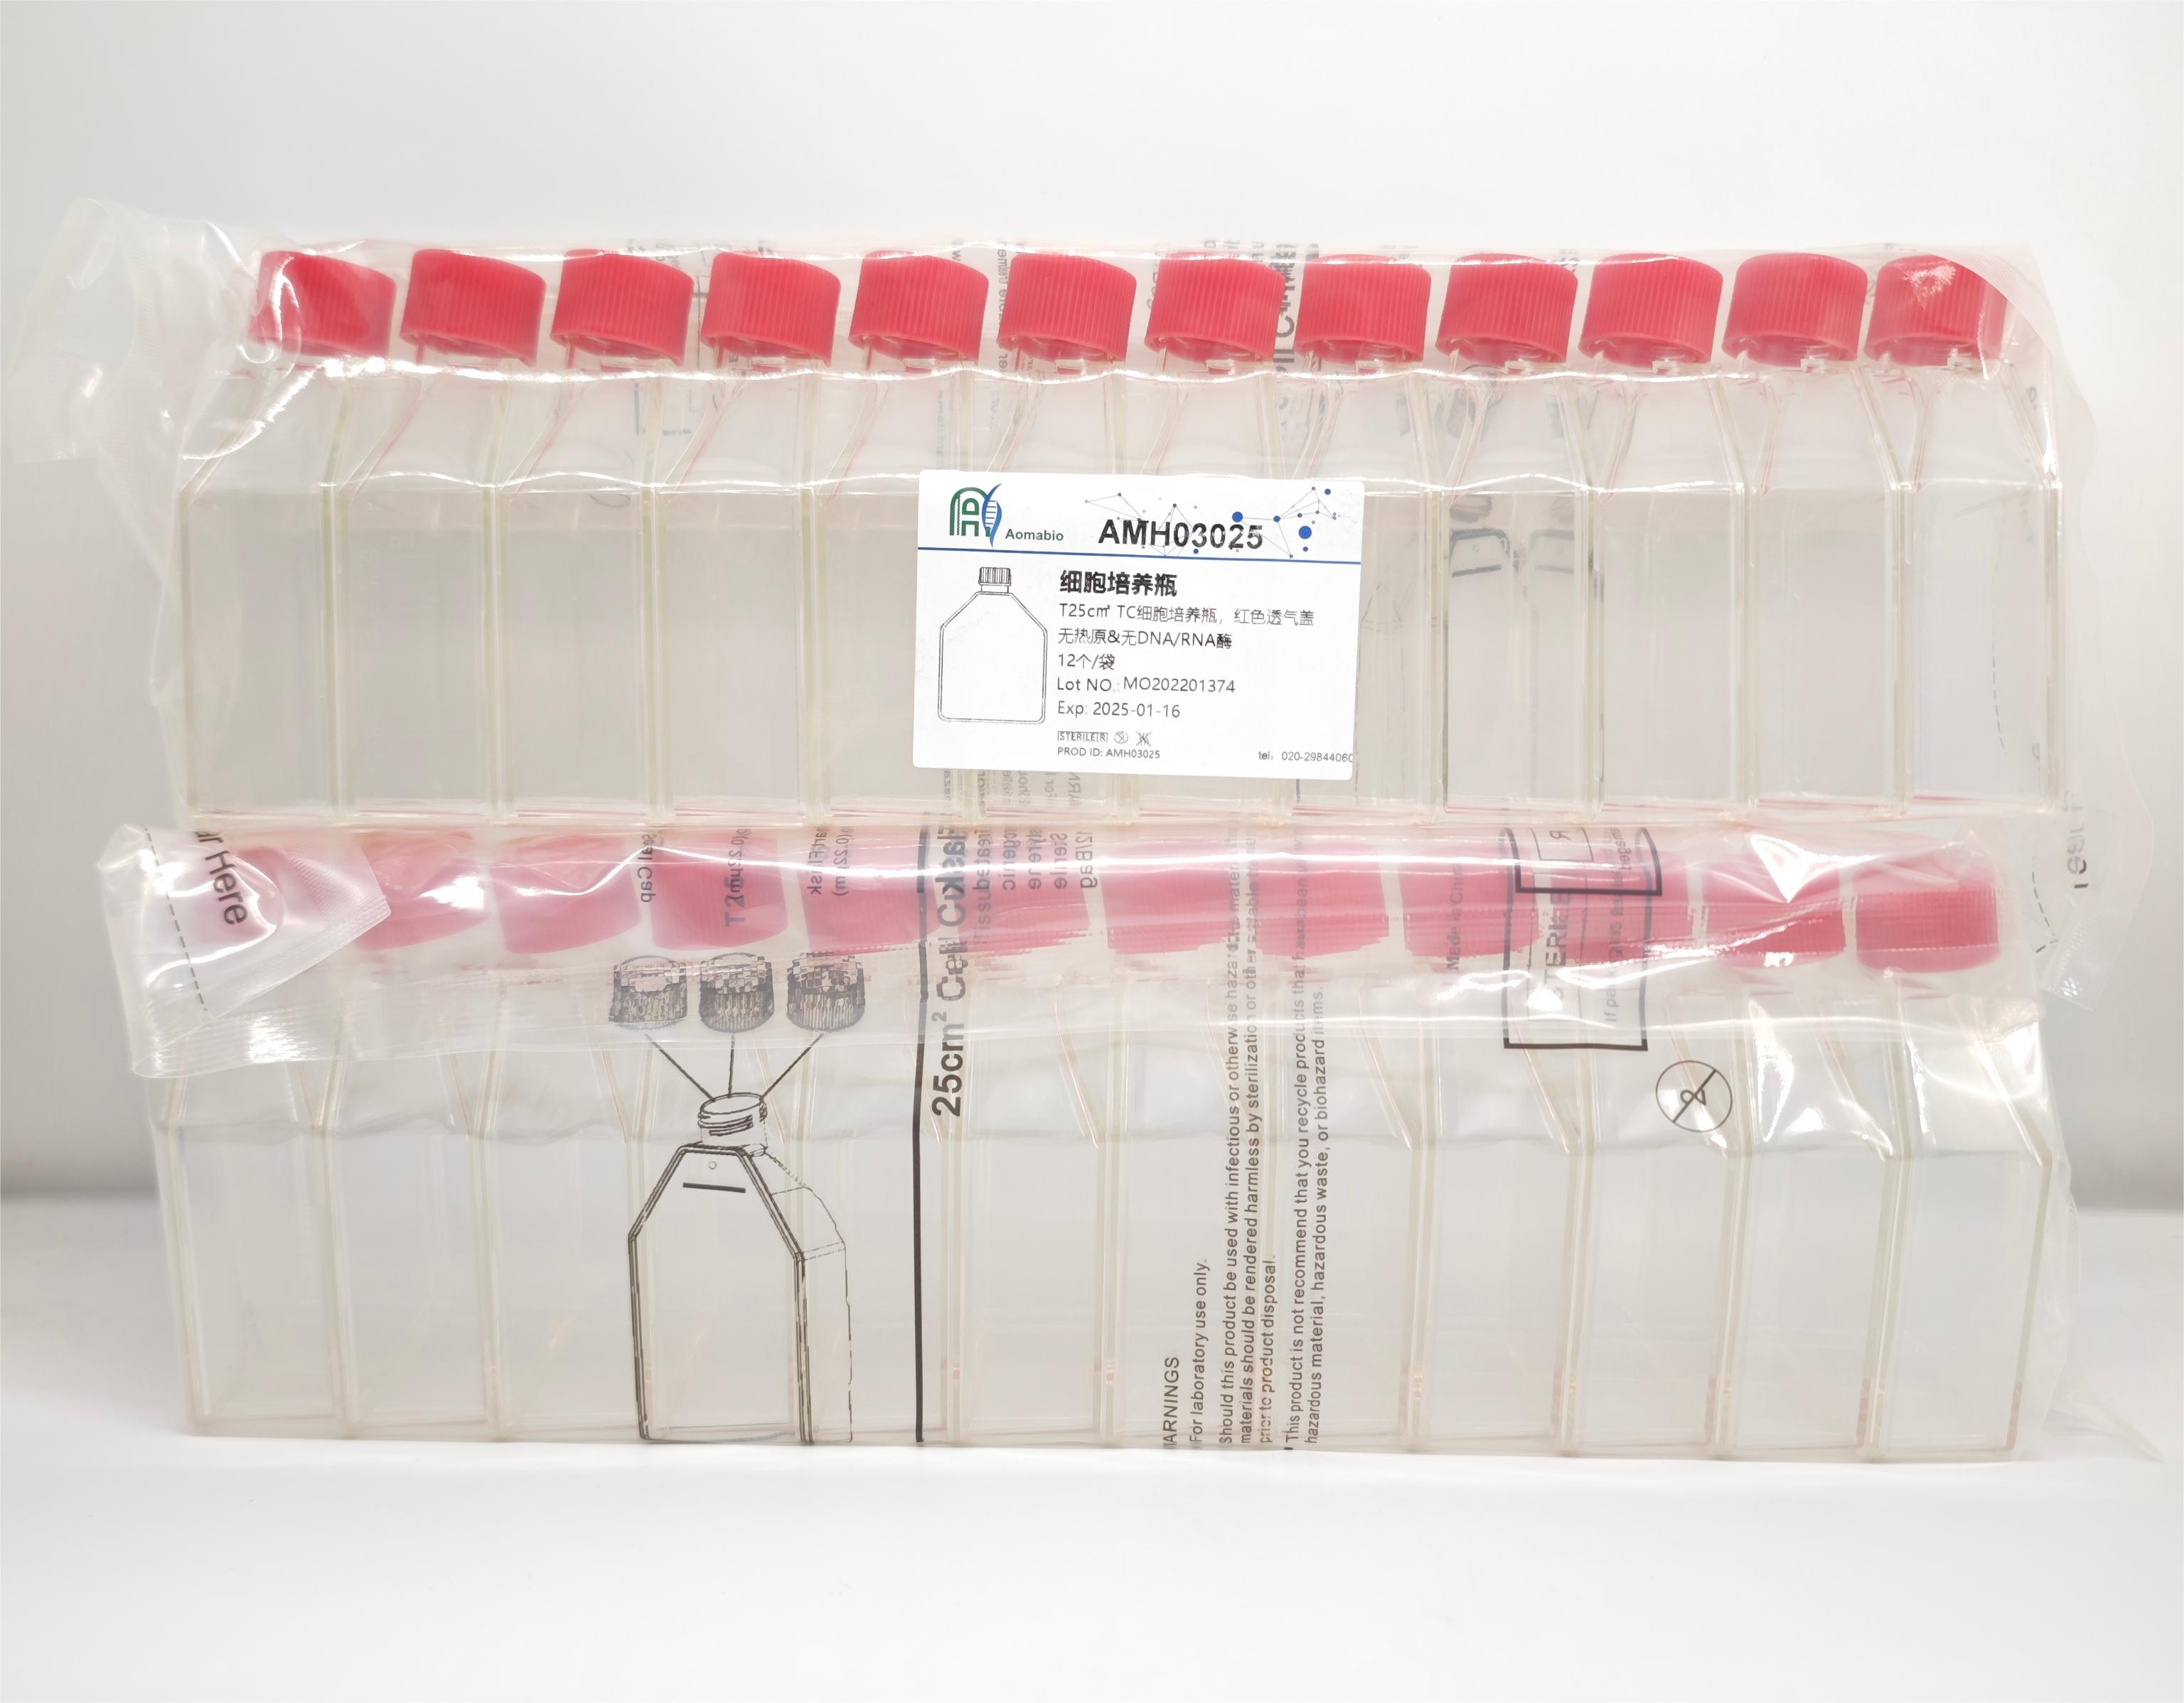 T25c㎡ TC细胞培养瓶，袋装灭菌，红色透气盖    AMH03025-1（12个/袋）